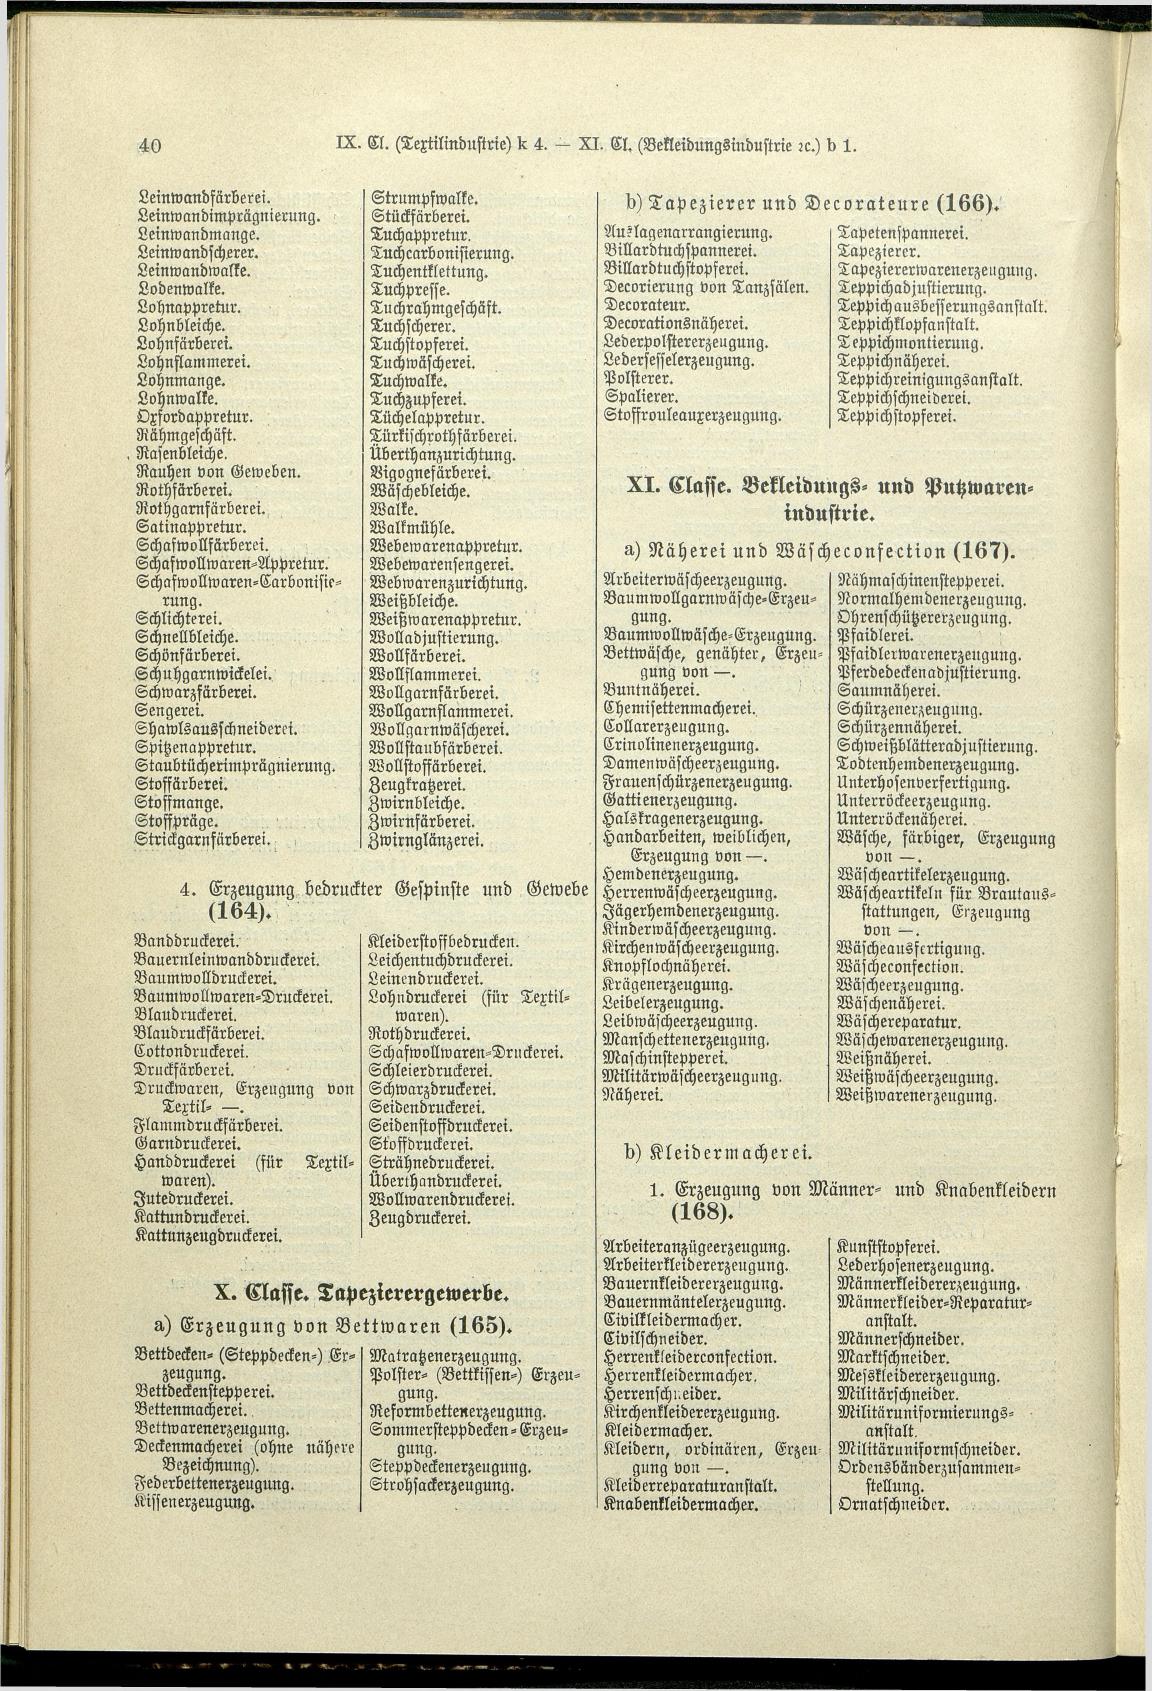 Verzeichnis der Gewerbe der im Reichsrathe vertretenen Königreiche und Länder 1900 - Seite 44